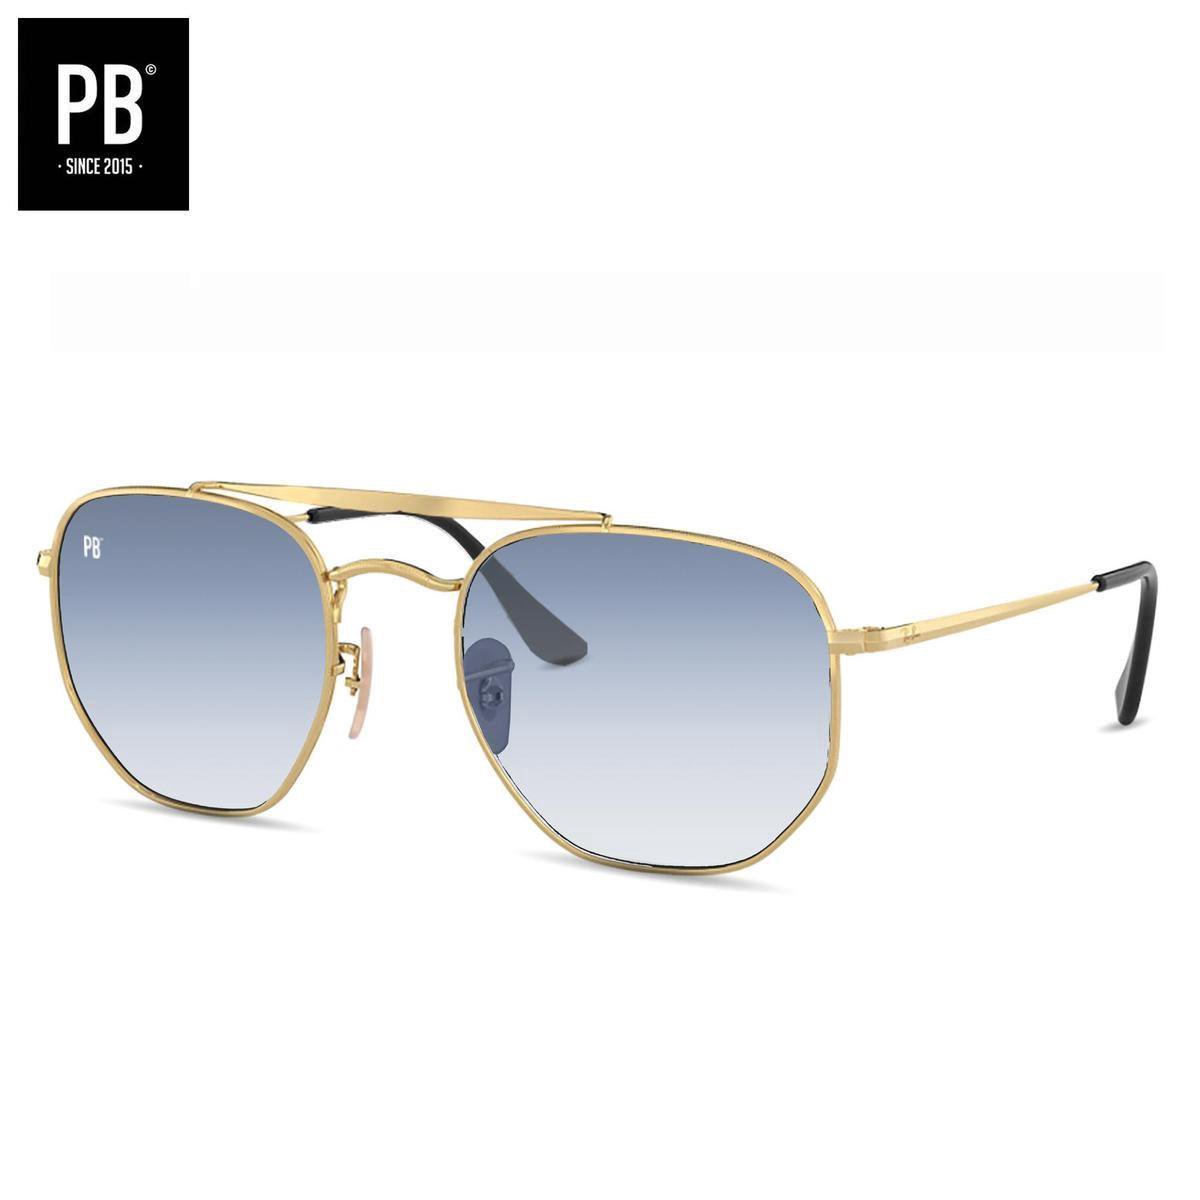 PB Sunglasses - Bridge Gradient Blue Small. - Zonnebril heren en dames - Gepolariseerd - Goud metalen frame - Stijlvolle neusbrug